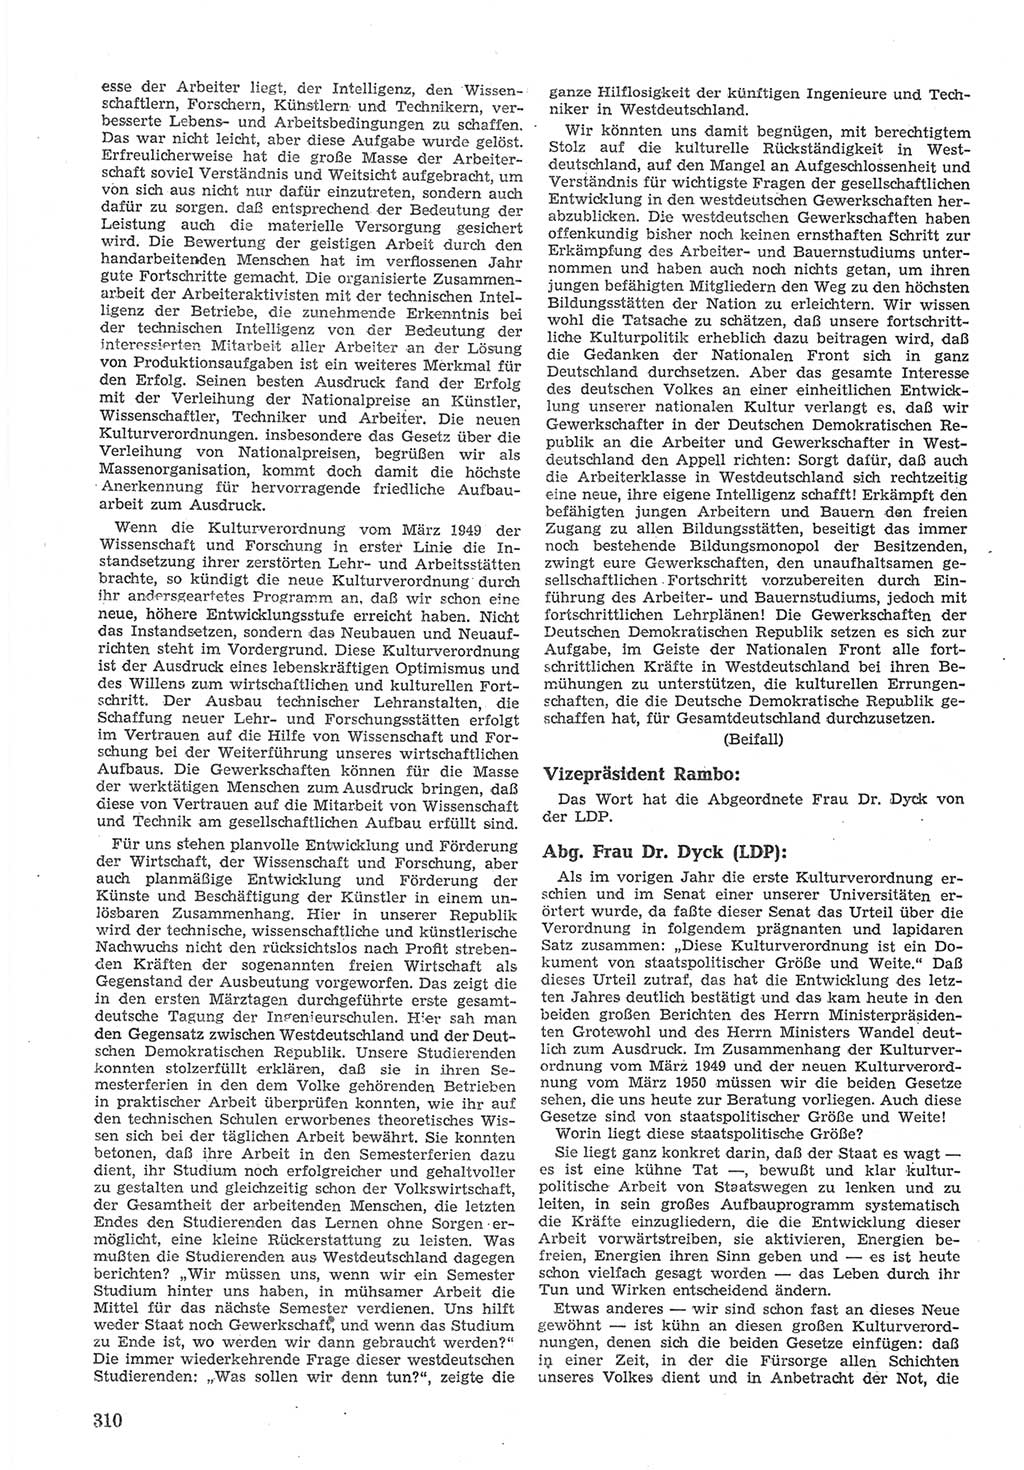 Provisorische Volkskammer (VK) der Deutschen Demokratischen Republik (DDR) 1949-1950, Dokument 324 (Prov. VK DDR 1949-1950, Dok. 324)